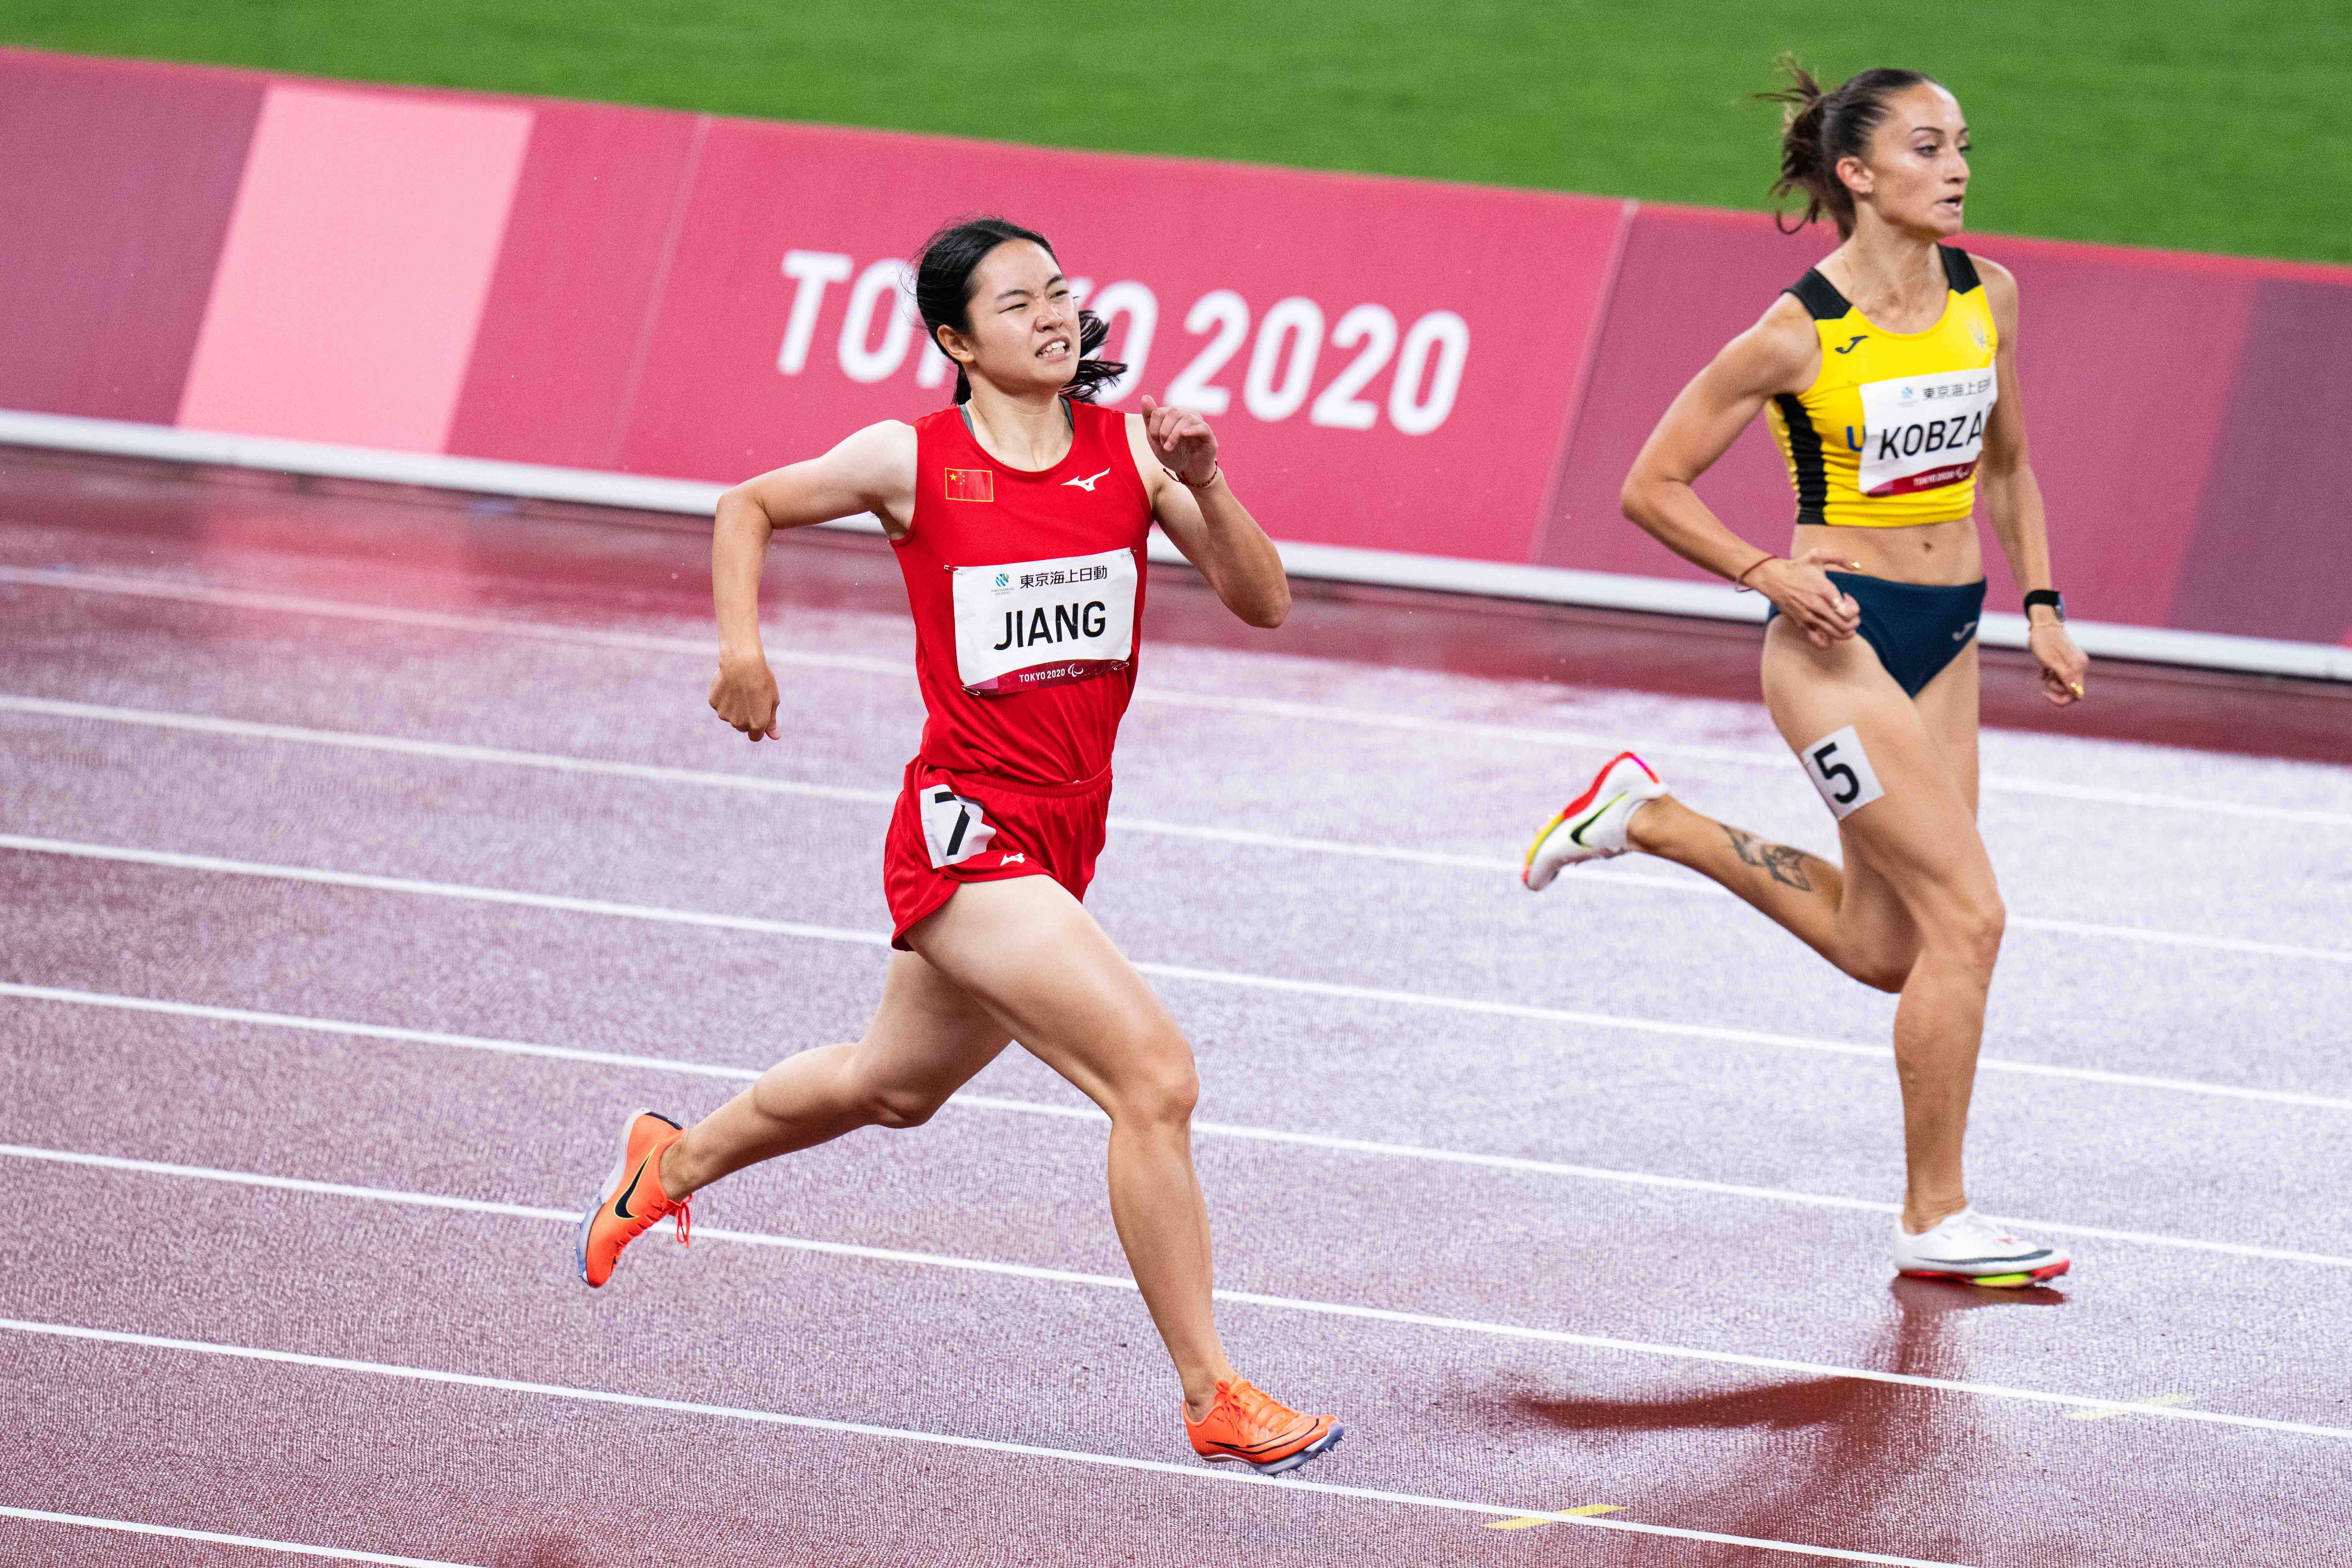 张金加 摄当日,在东京残奥会田径女子400米t37级决赛中,中国选手蒋